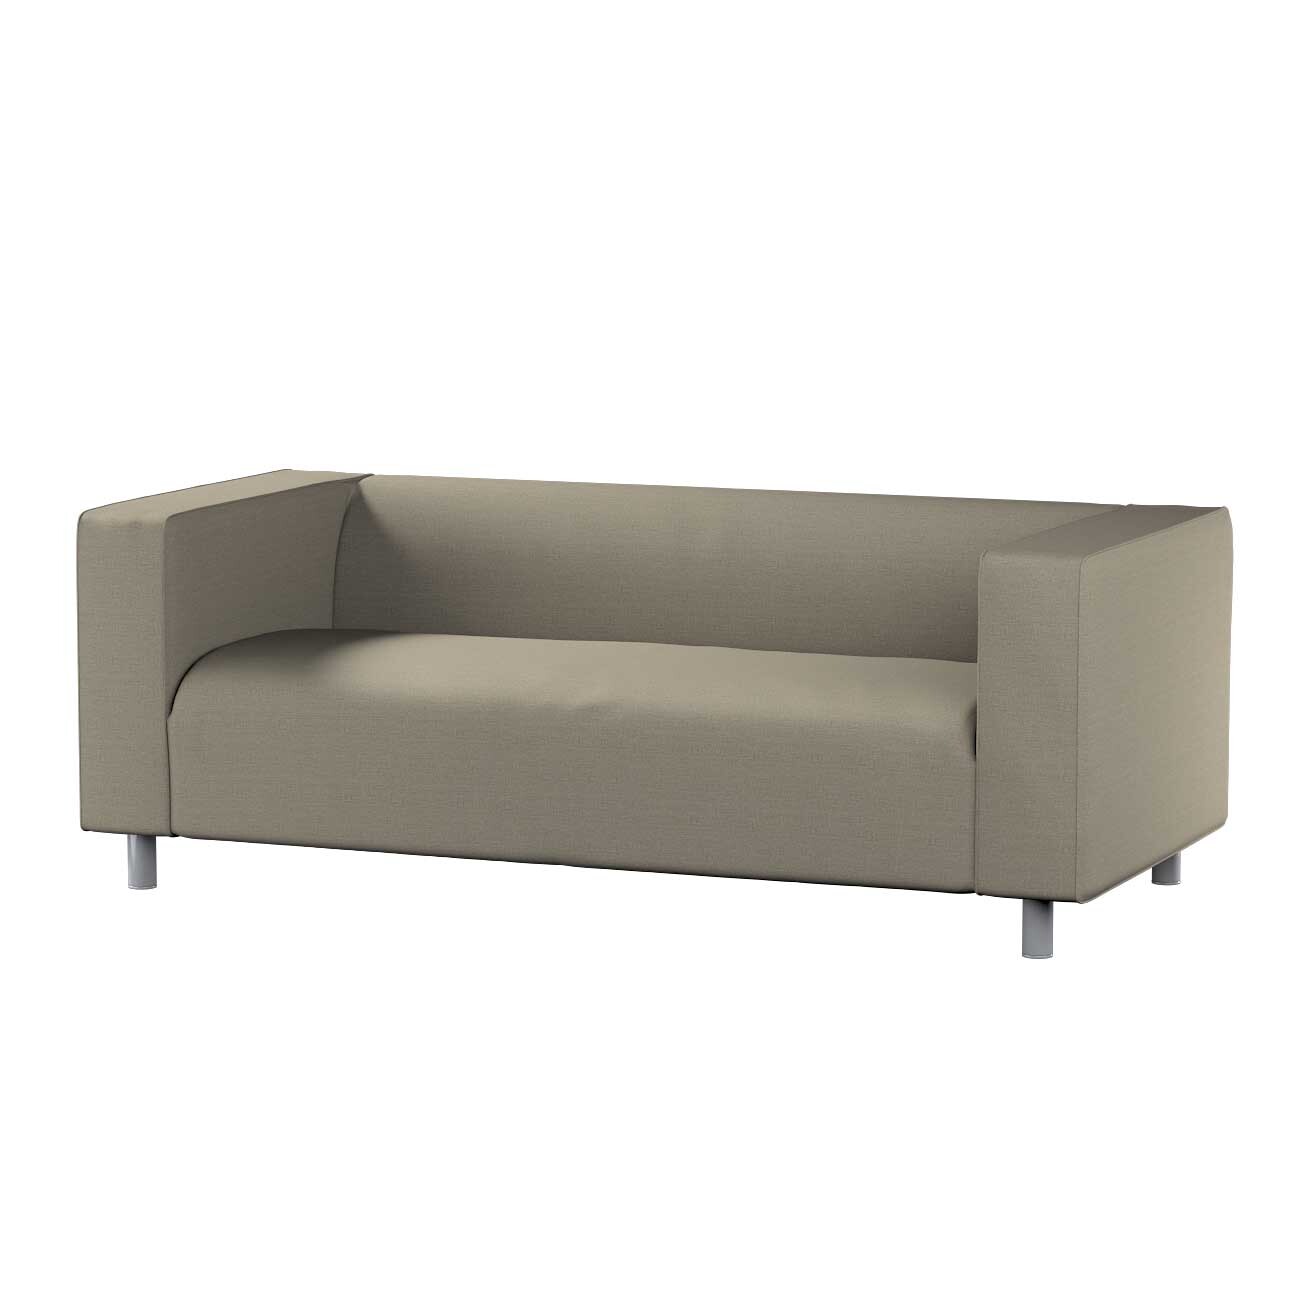 Bezug für Klippan 2-Sitzer Sofa, beige-grau, Sofahusse, Klippan 2-Sitzer, L günstig online kaufen